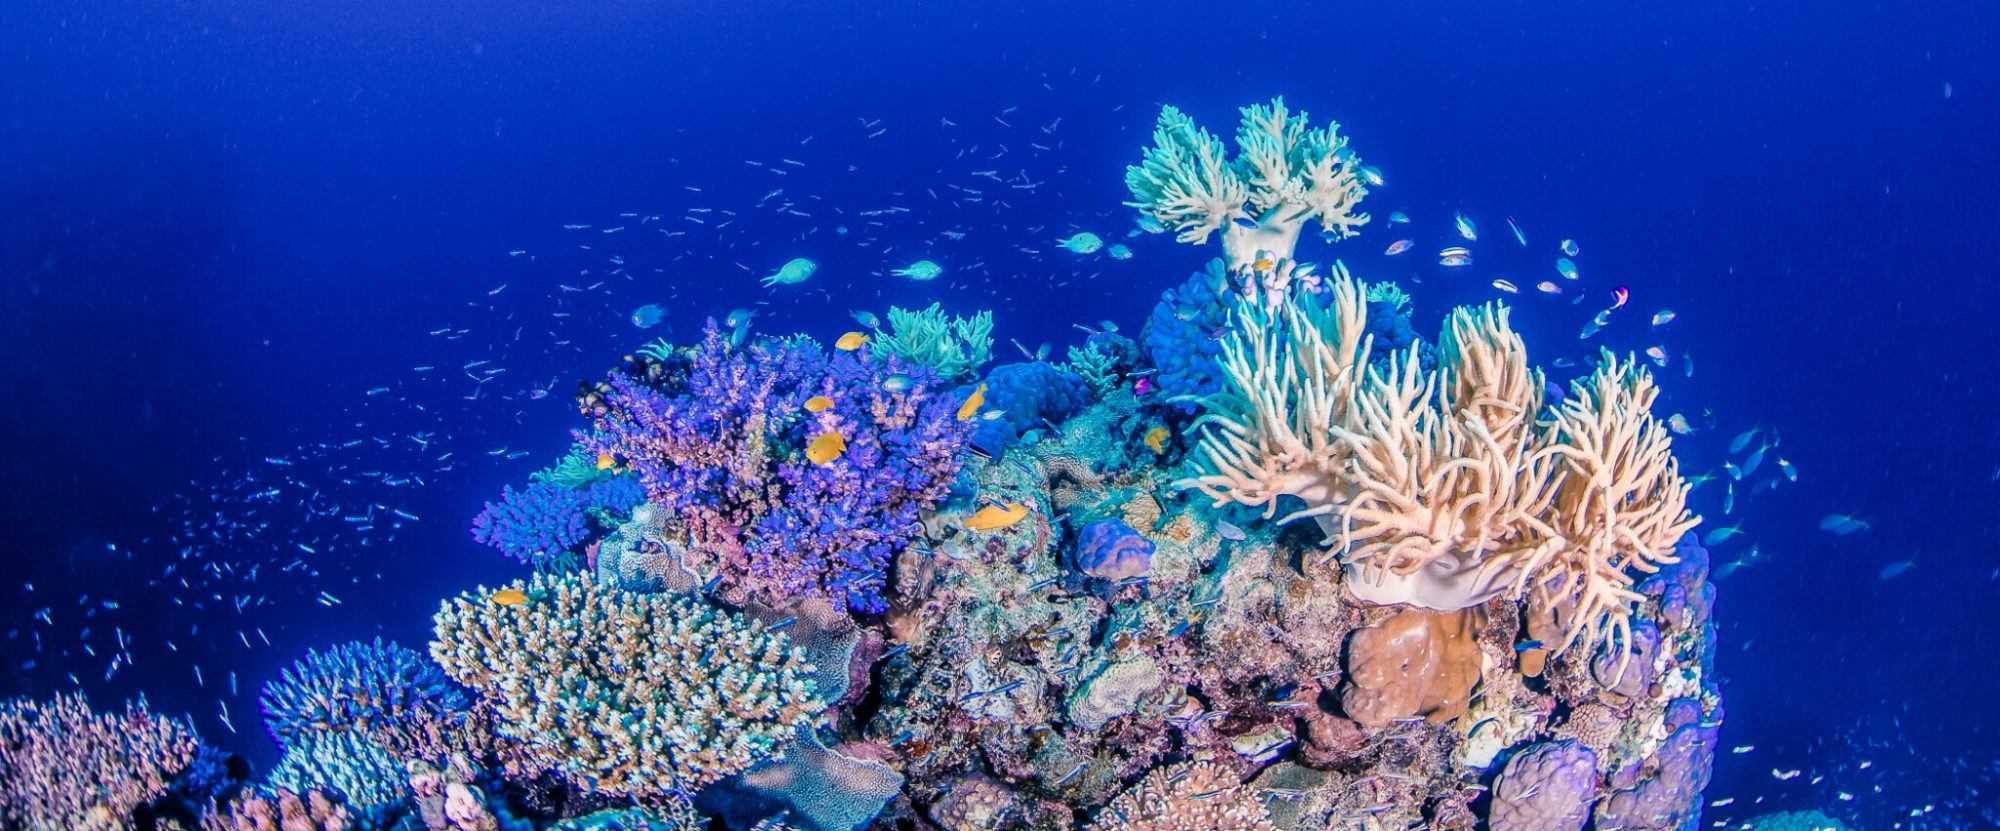 Коралловые рифы: характеристика, формирование, типы, флора, фауна.